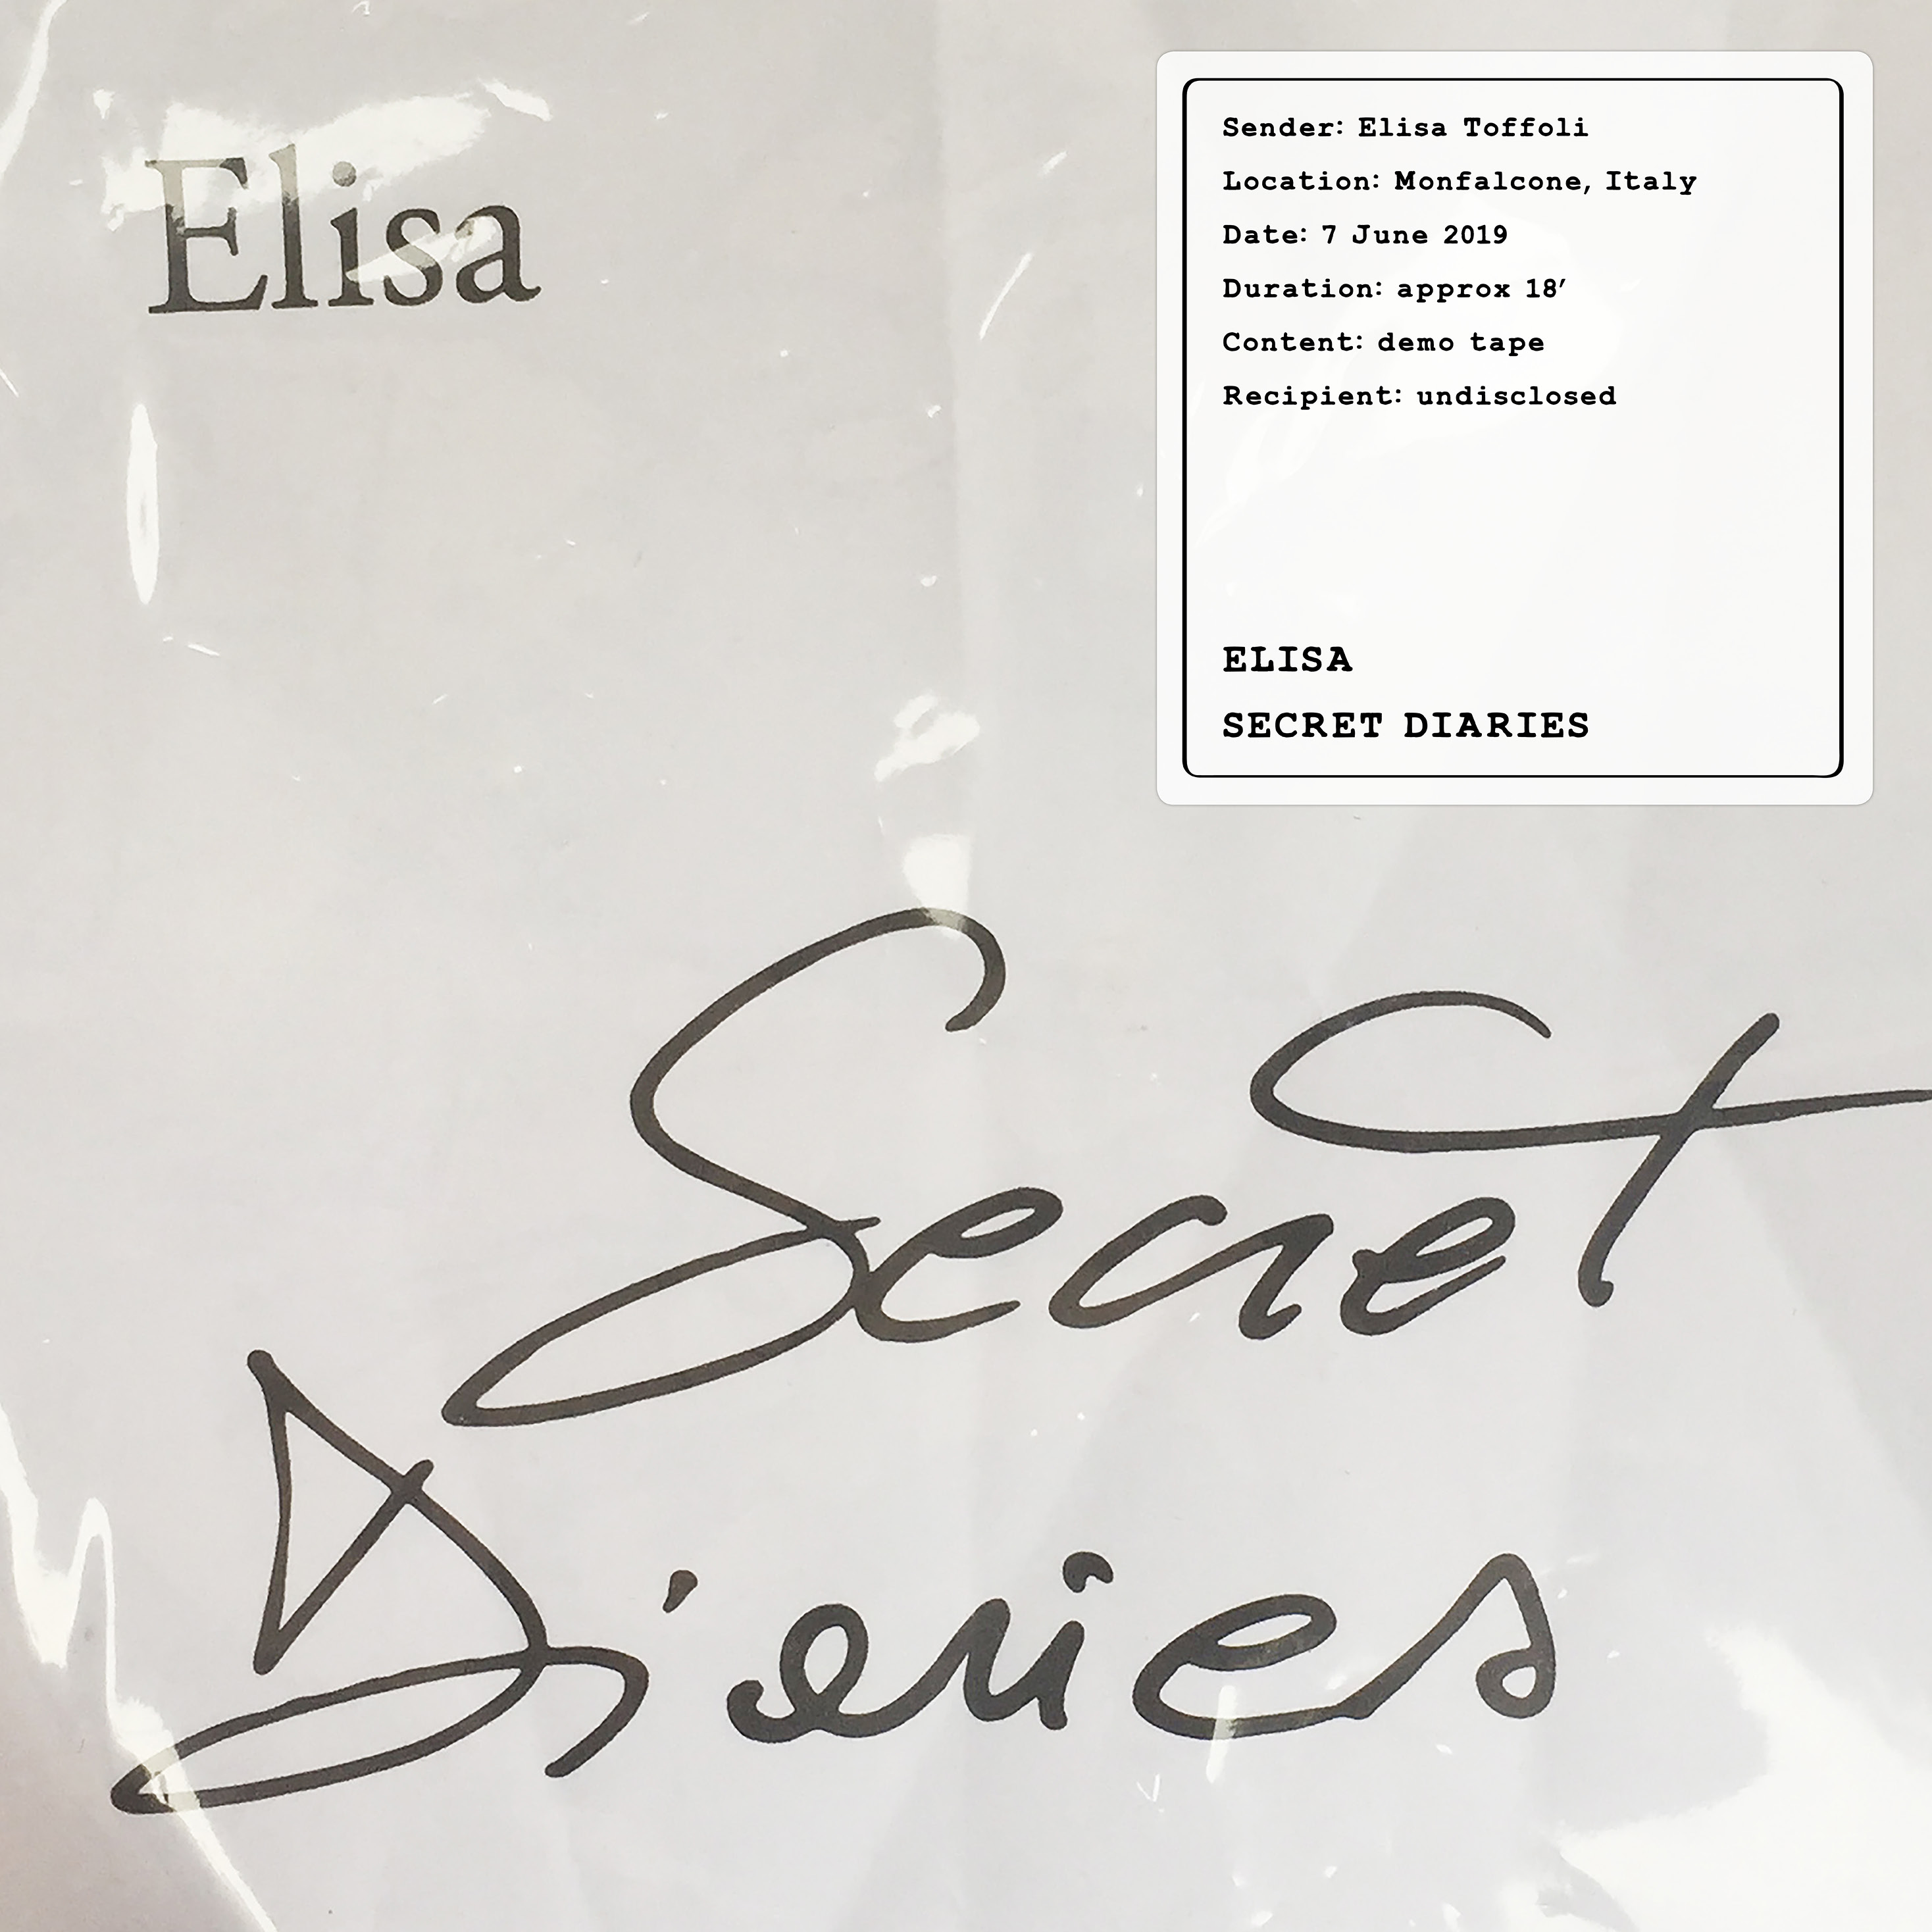 Elisa Secret Diaries